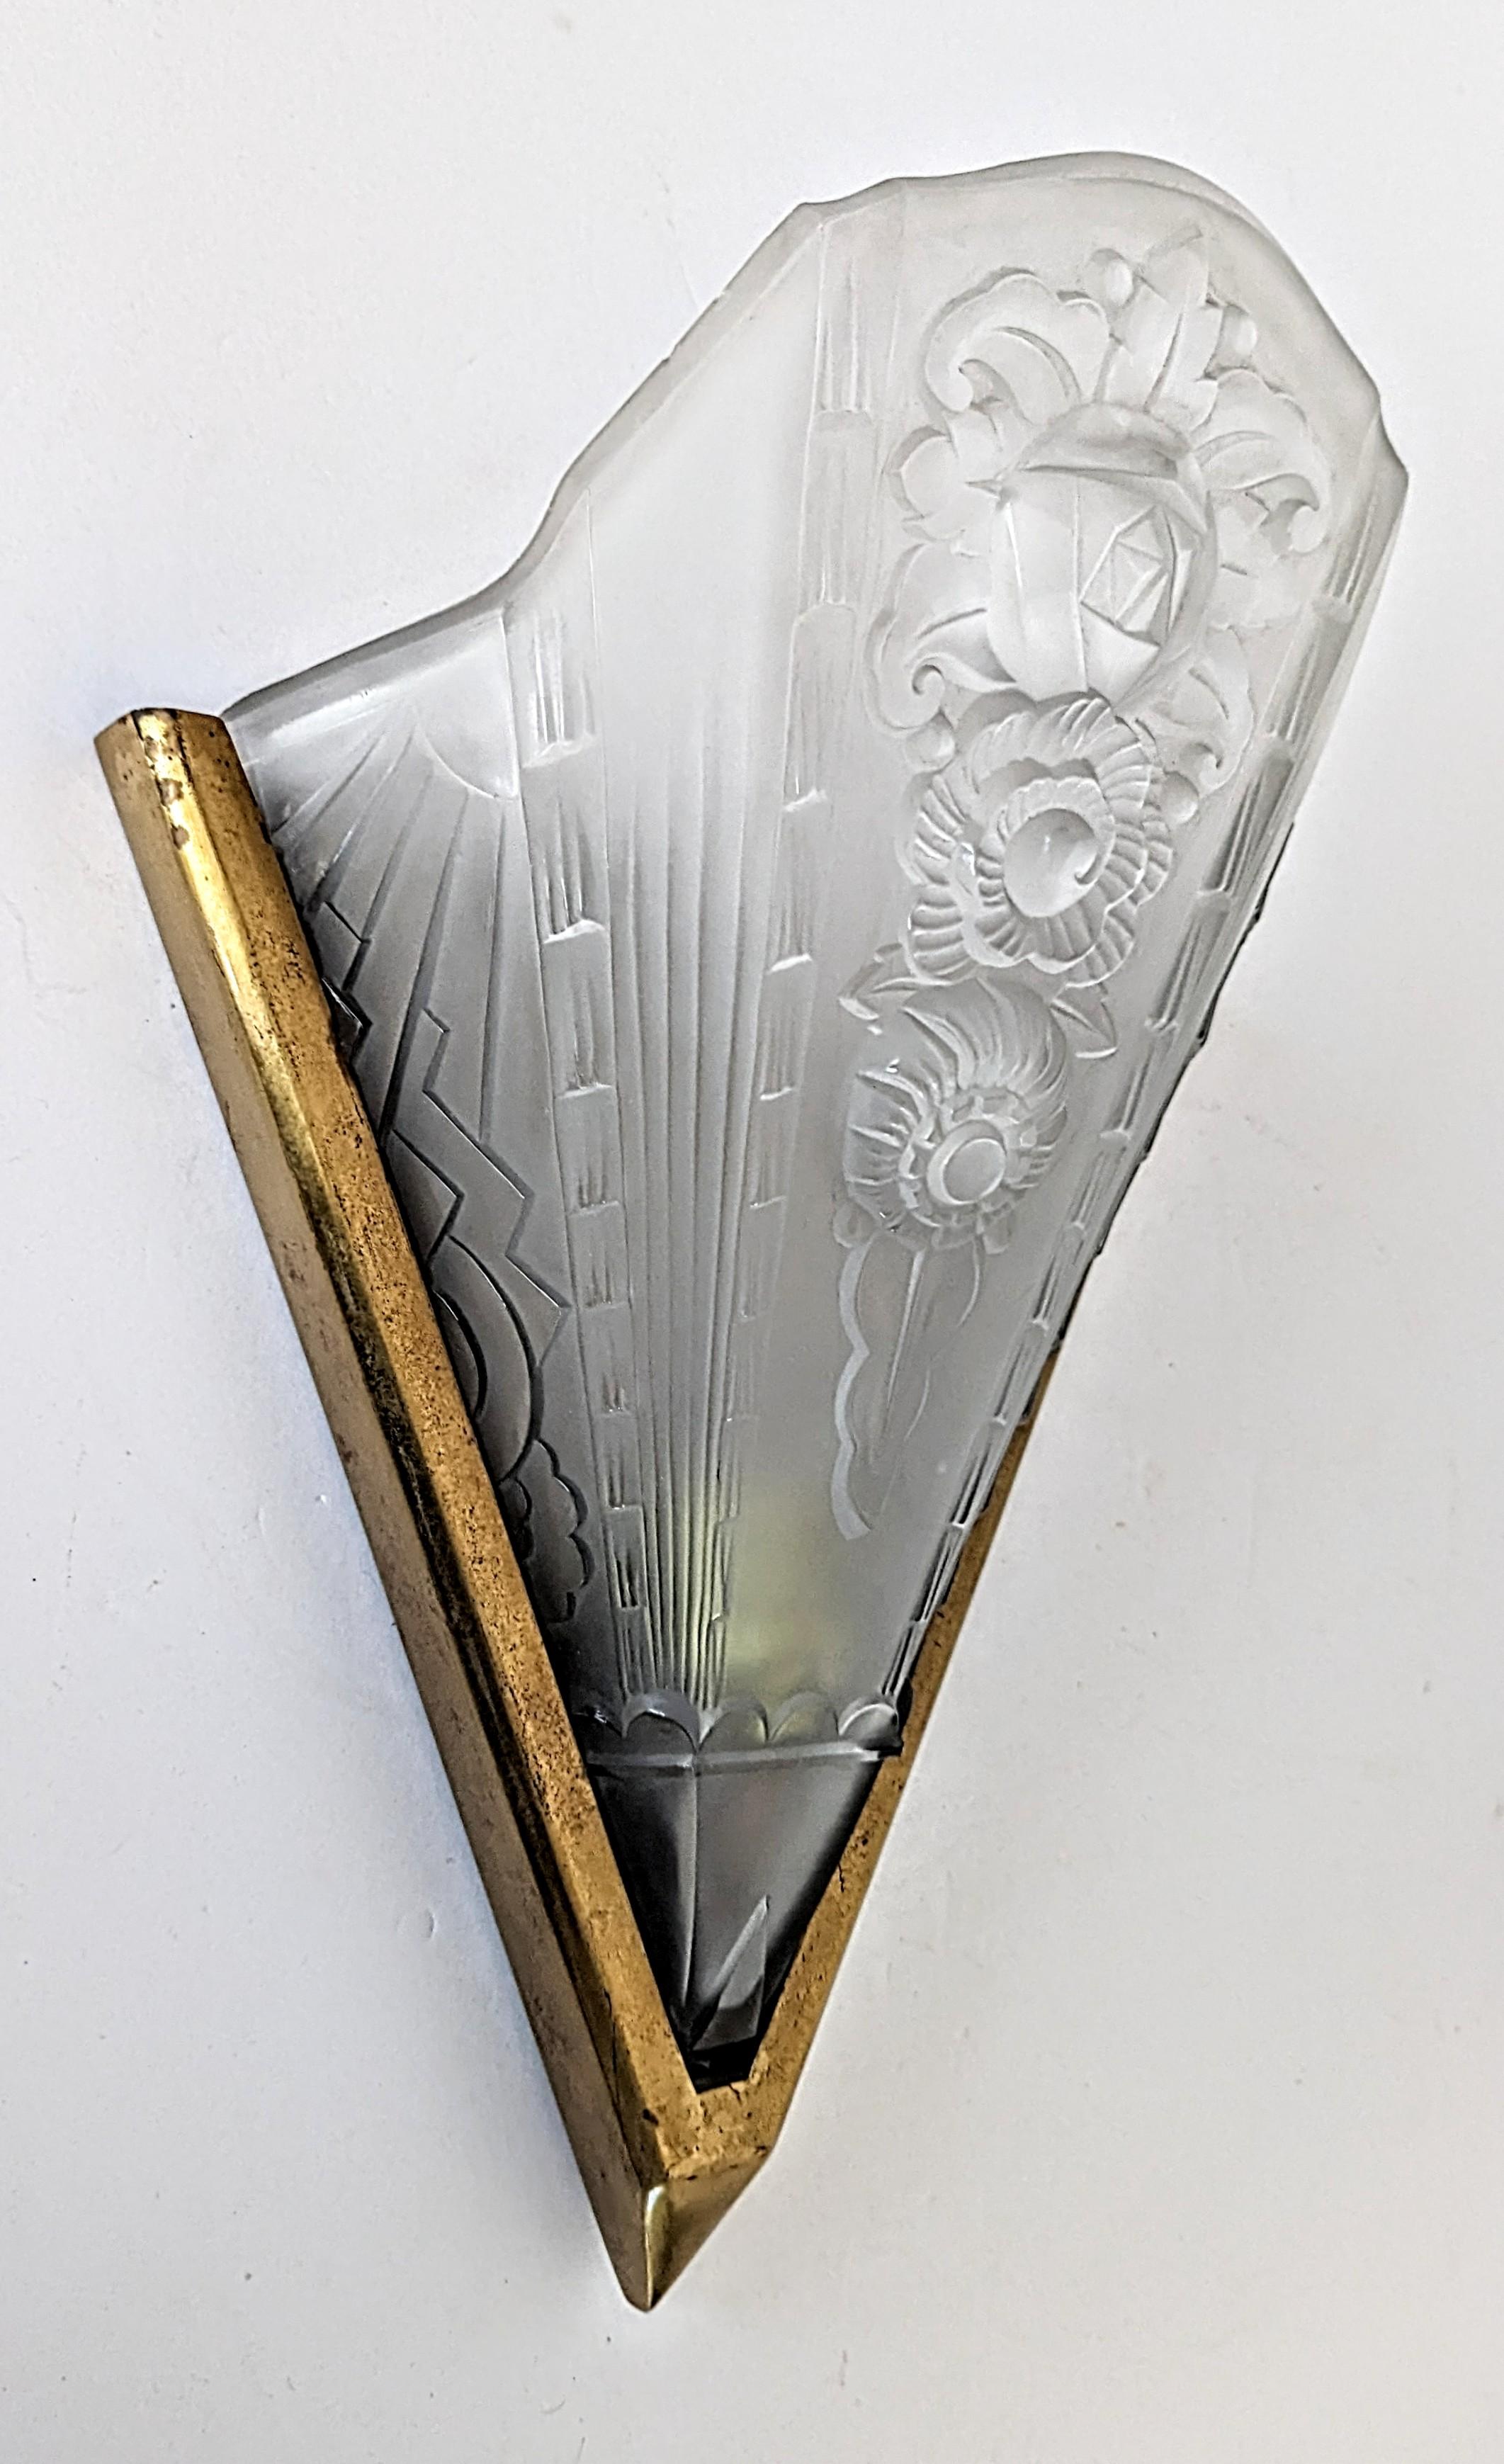 Ein einzelner französischer Art Deco Wandleuchter in gutem Zustand. Geformter Schirm aus klarem Milchglas, verziert mit geometrischen und floralen Motiven. Montiert in einem goldenen Rahmen. Die Leuchte wurde für die US-Normen neu verkabelt. Für